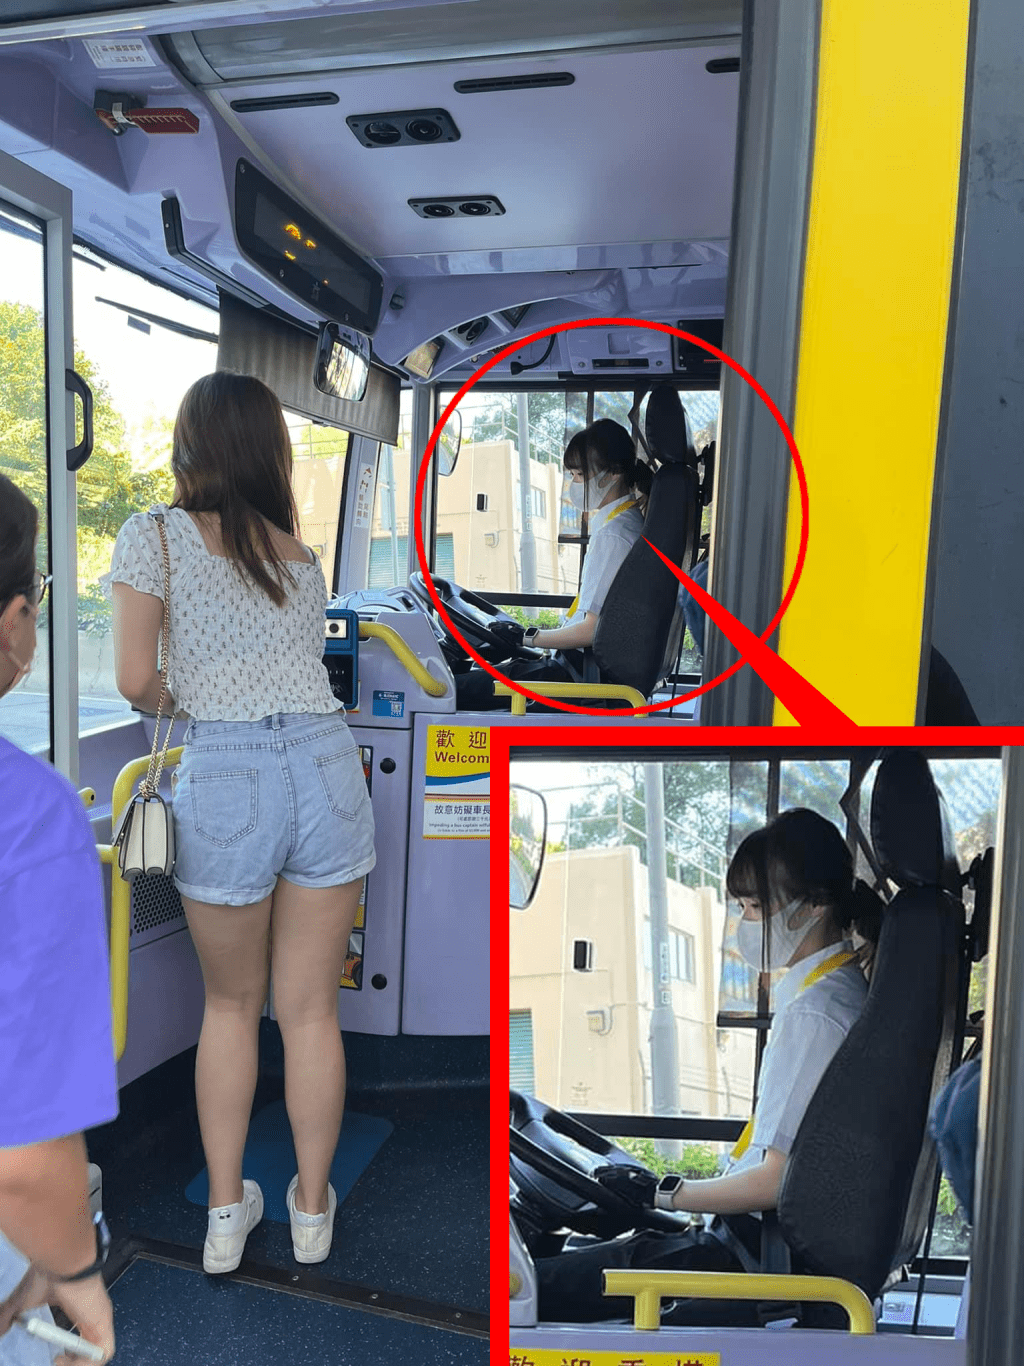 城巴“新仙气女车长”的相片虽只有这一张，而且离远拍摄，女车长又戴着口罩，但此消息已引发网民热议。